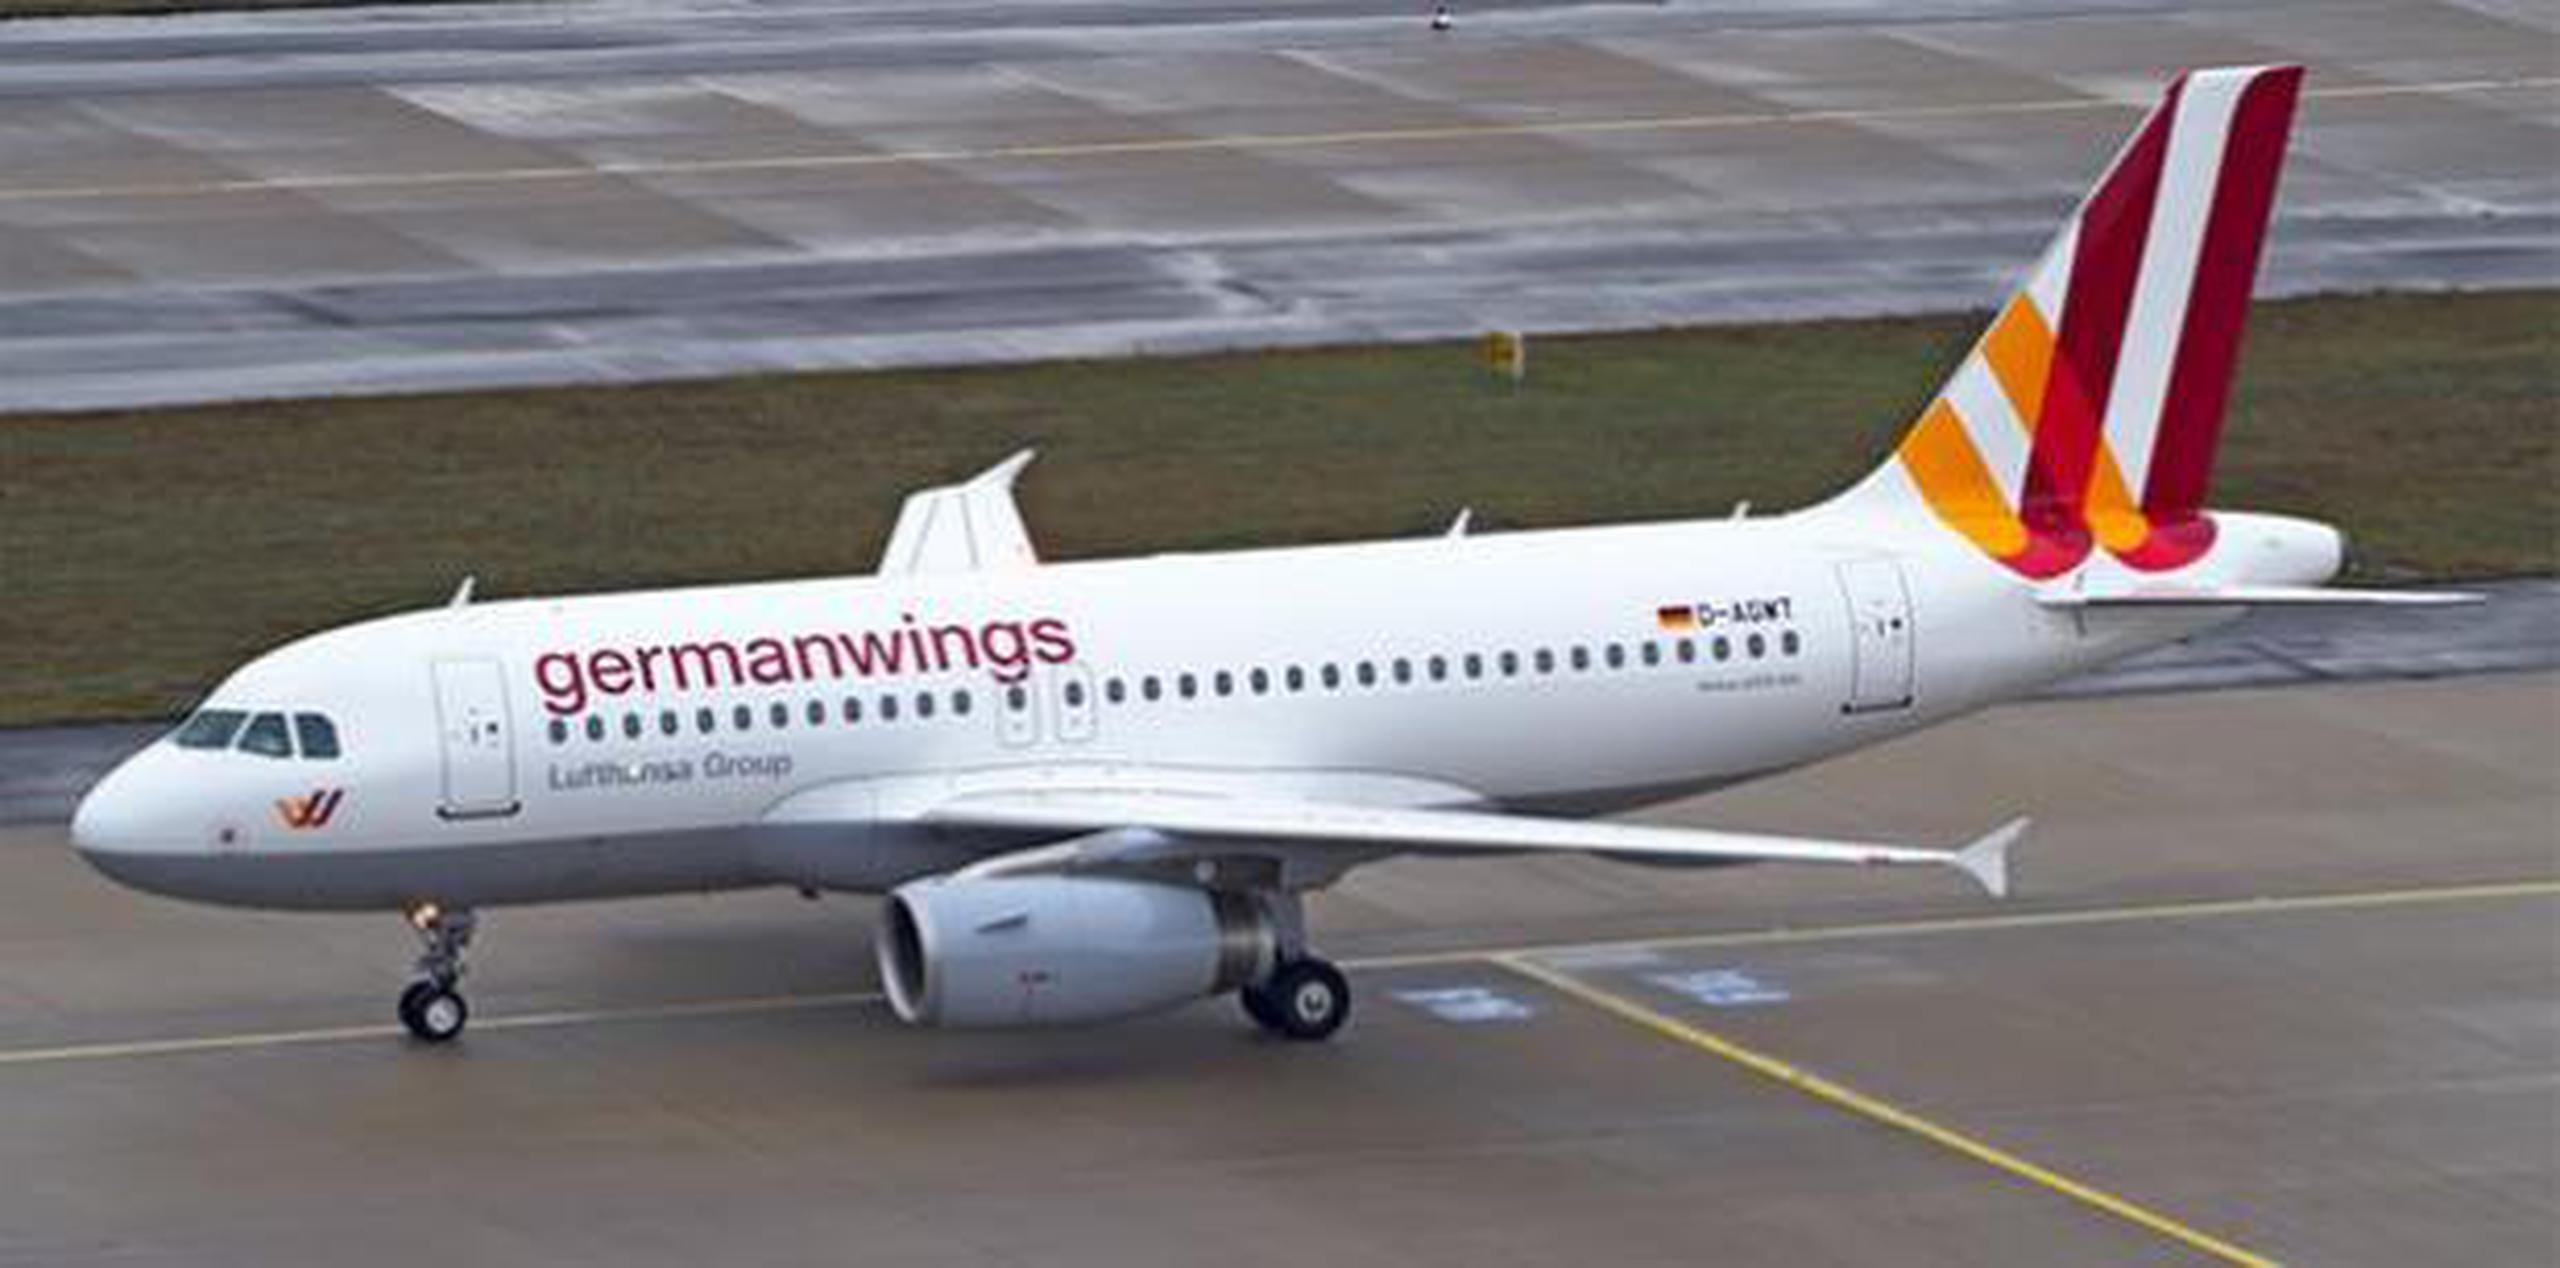 El piloto Andreas Lubitz se encerró en la cabina y estrelló un avión de Germanwings en los Alpes franceses en 2015, matando a 150 personas. (Archivo)